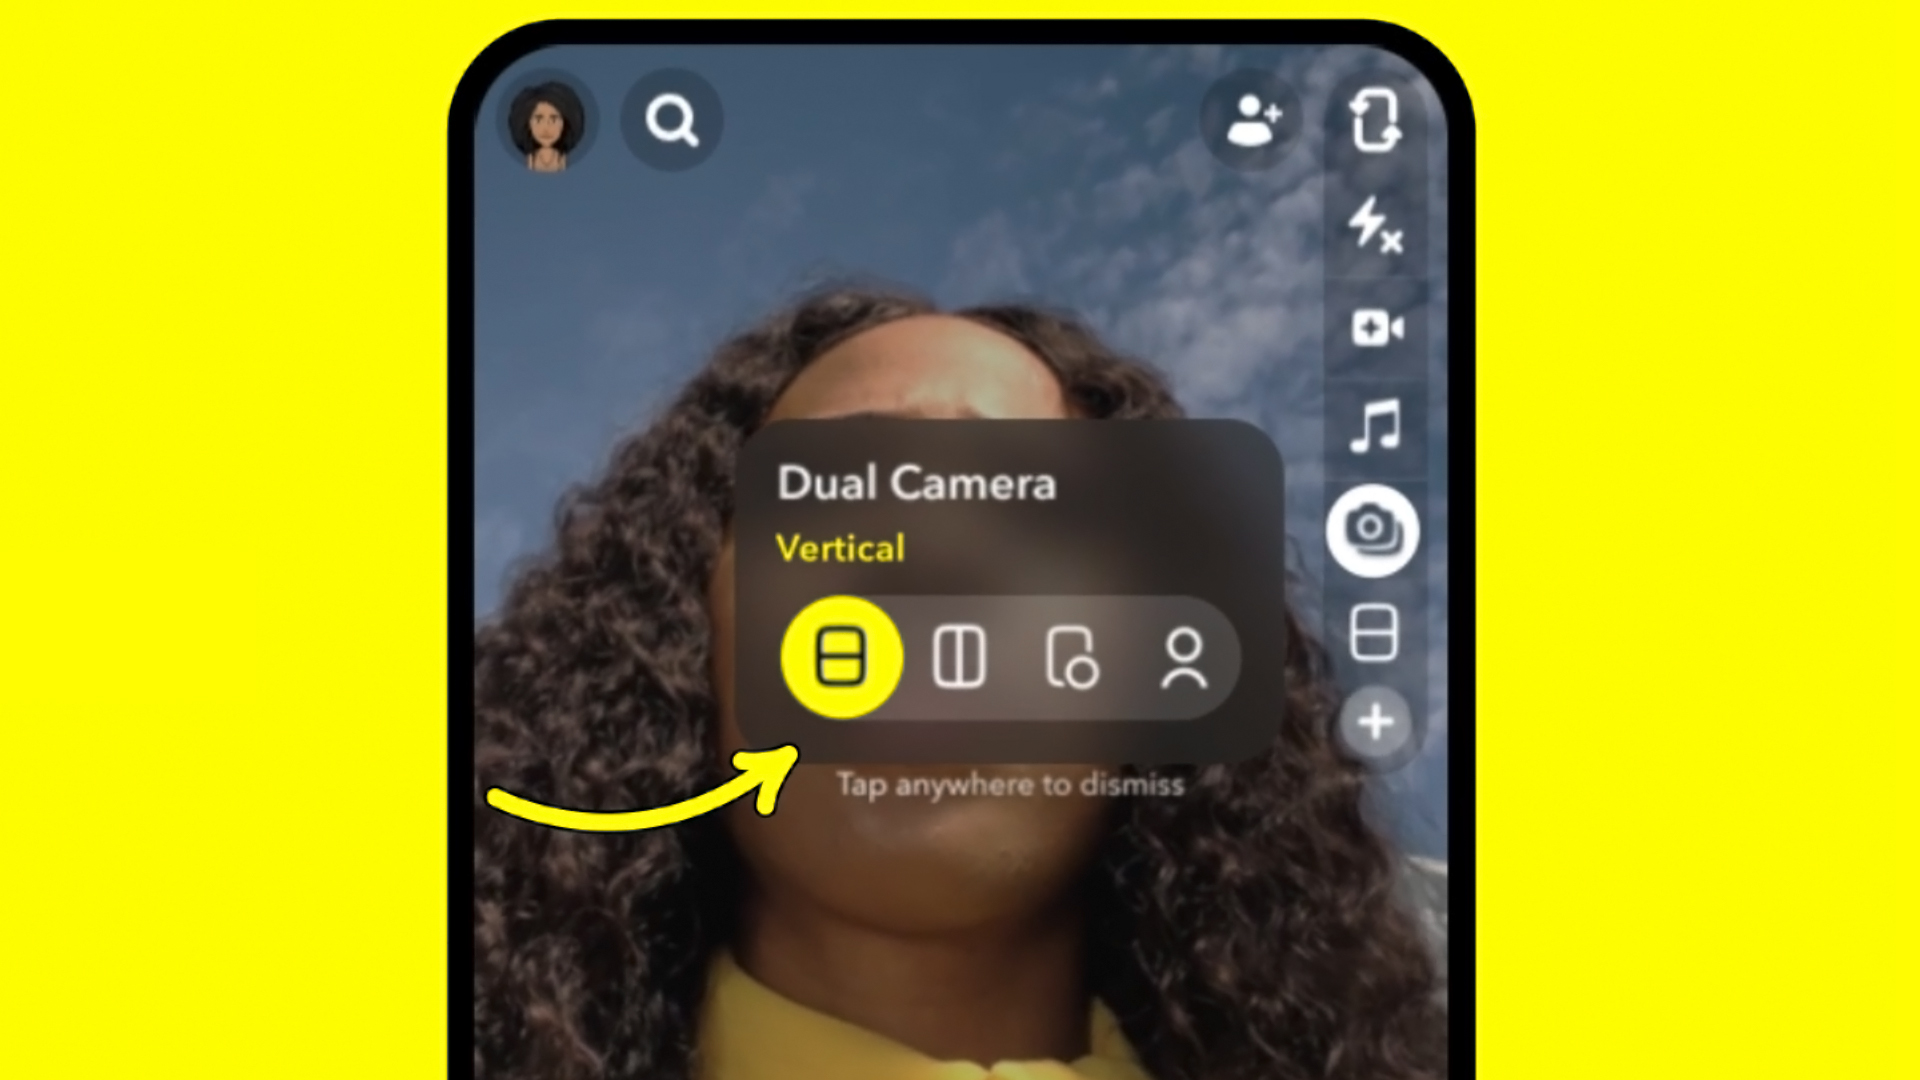 Snapchat Dual Camera up close